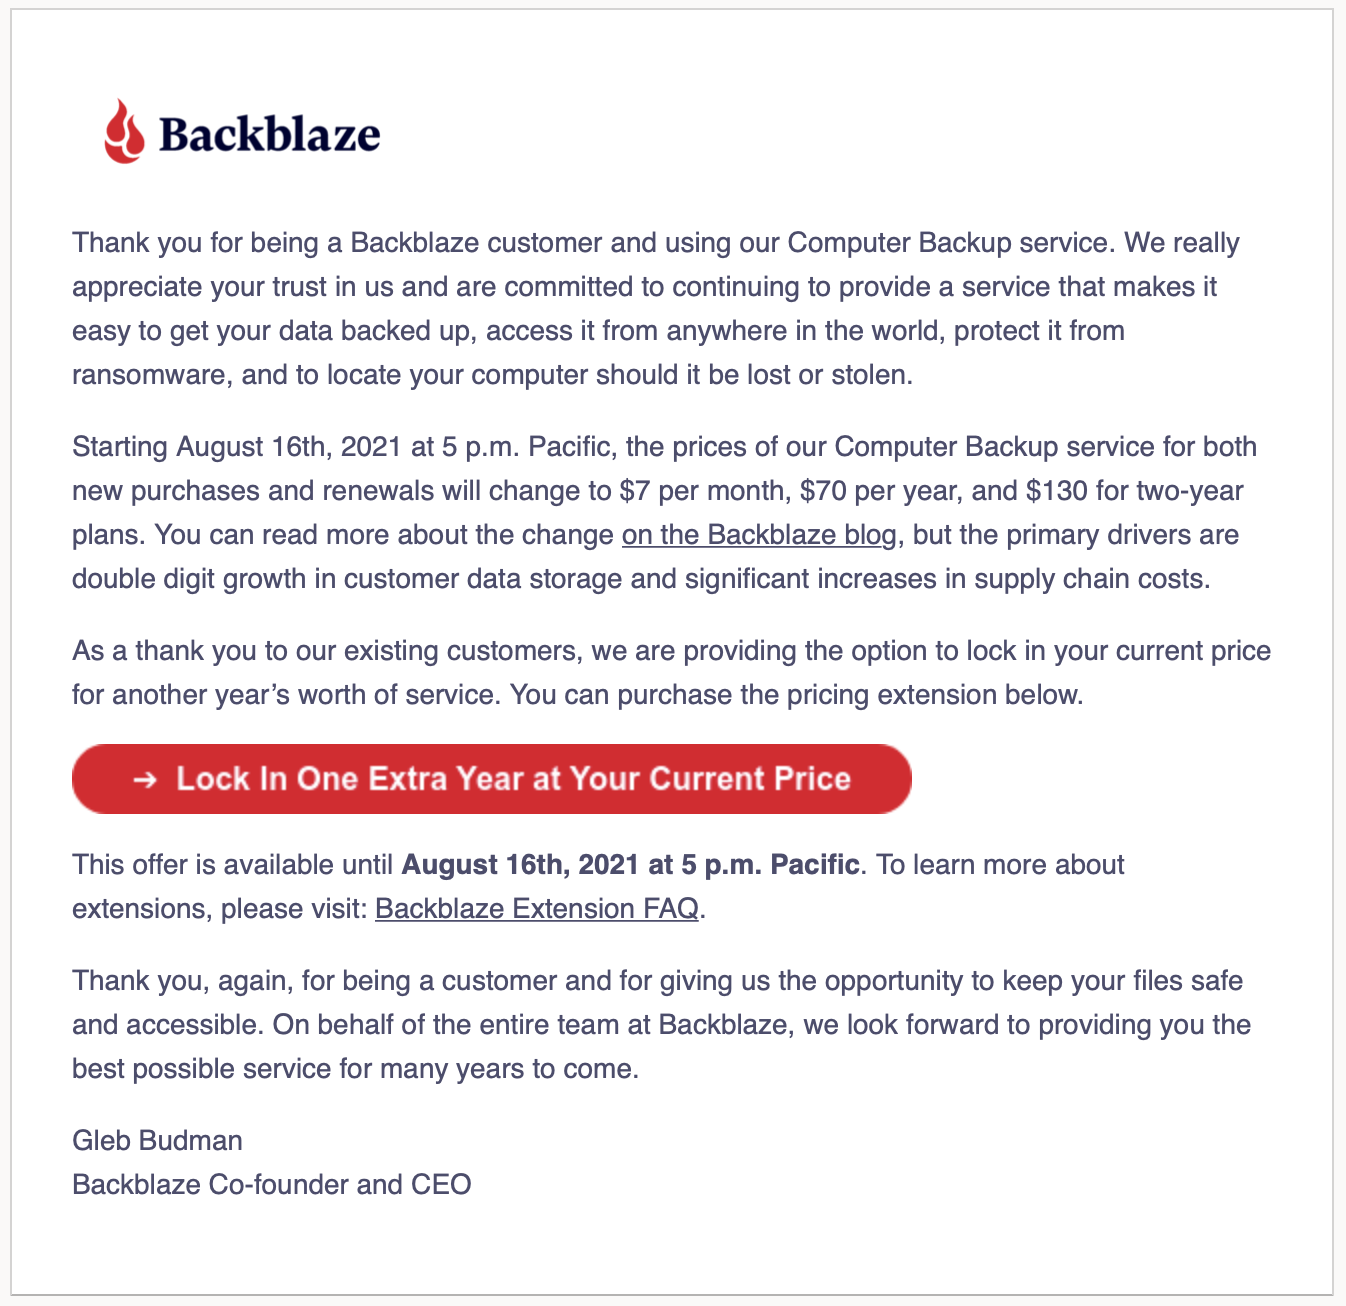 backblaze share price